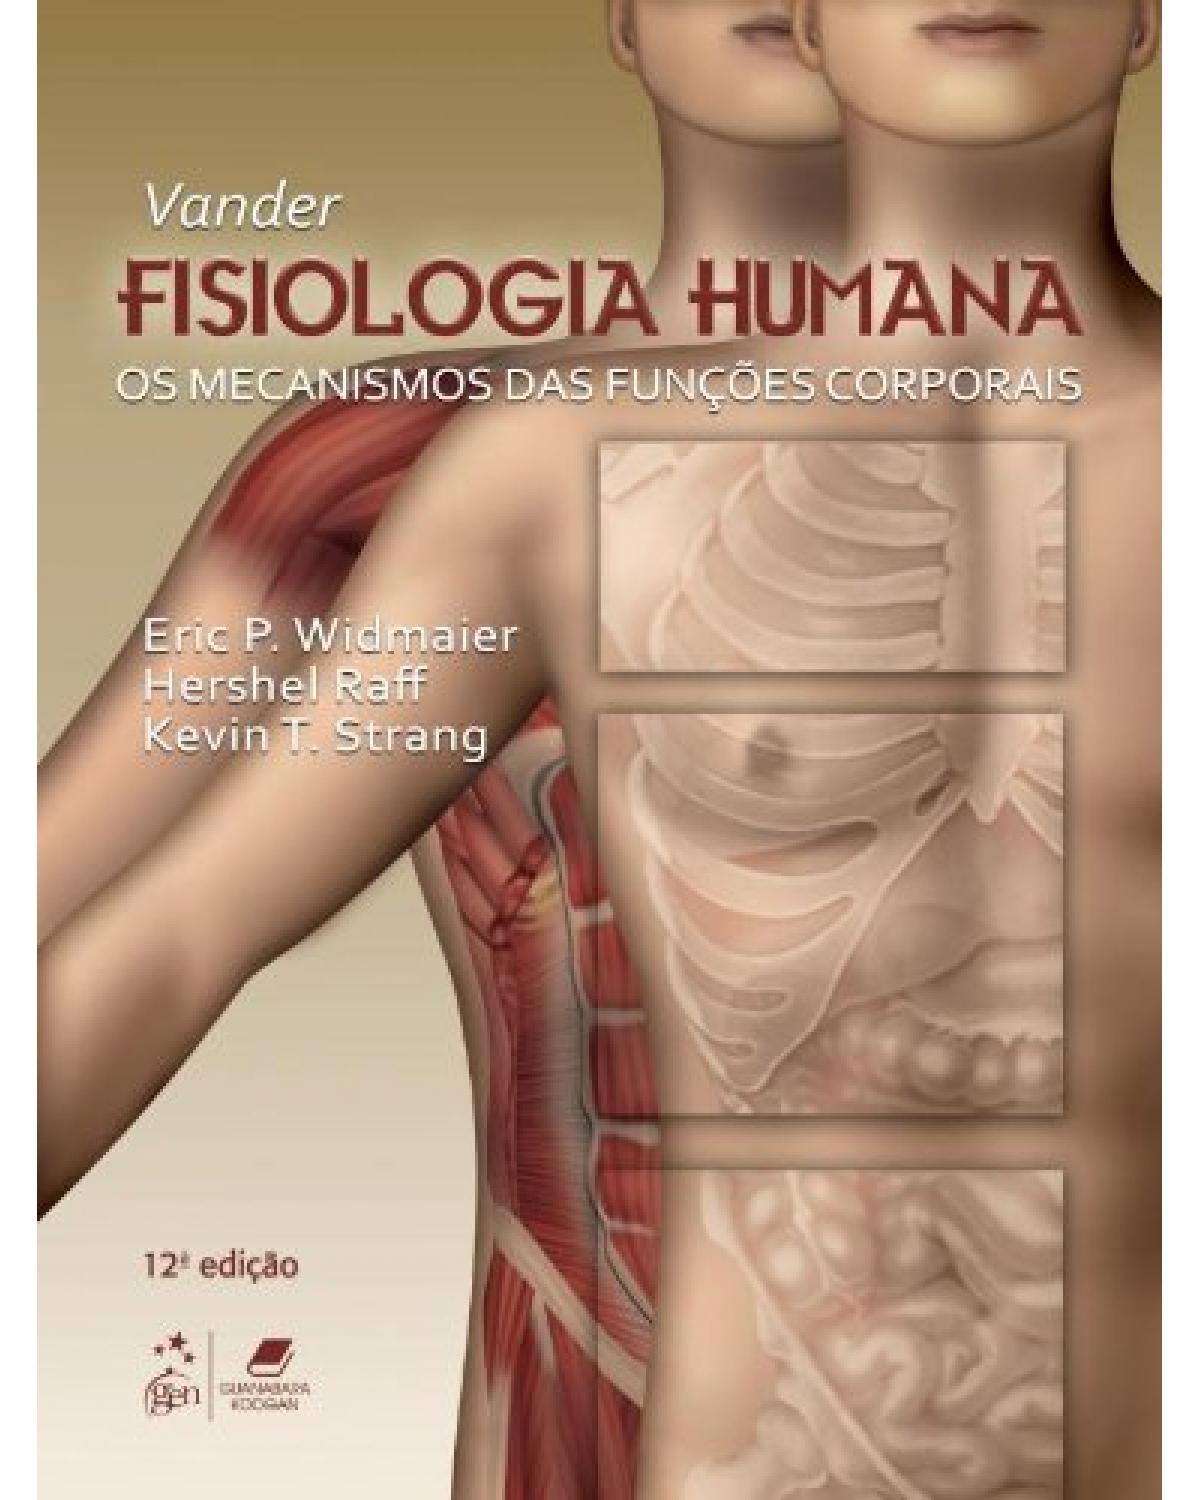 Vander - Fisiologia humana - Os mecanismos das funções corporais - 12ª Edição | 2013